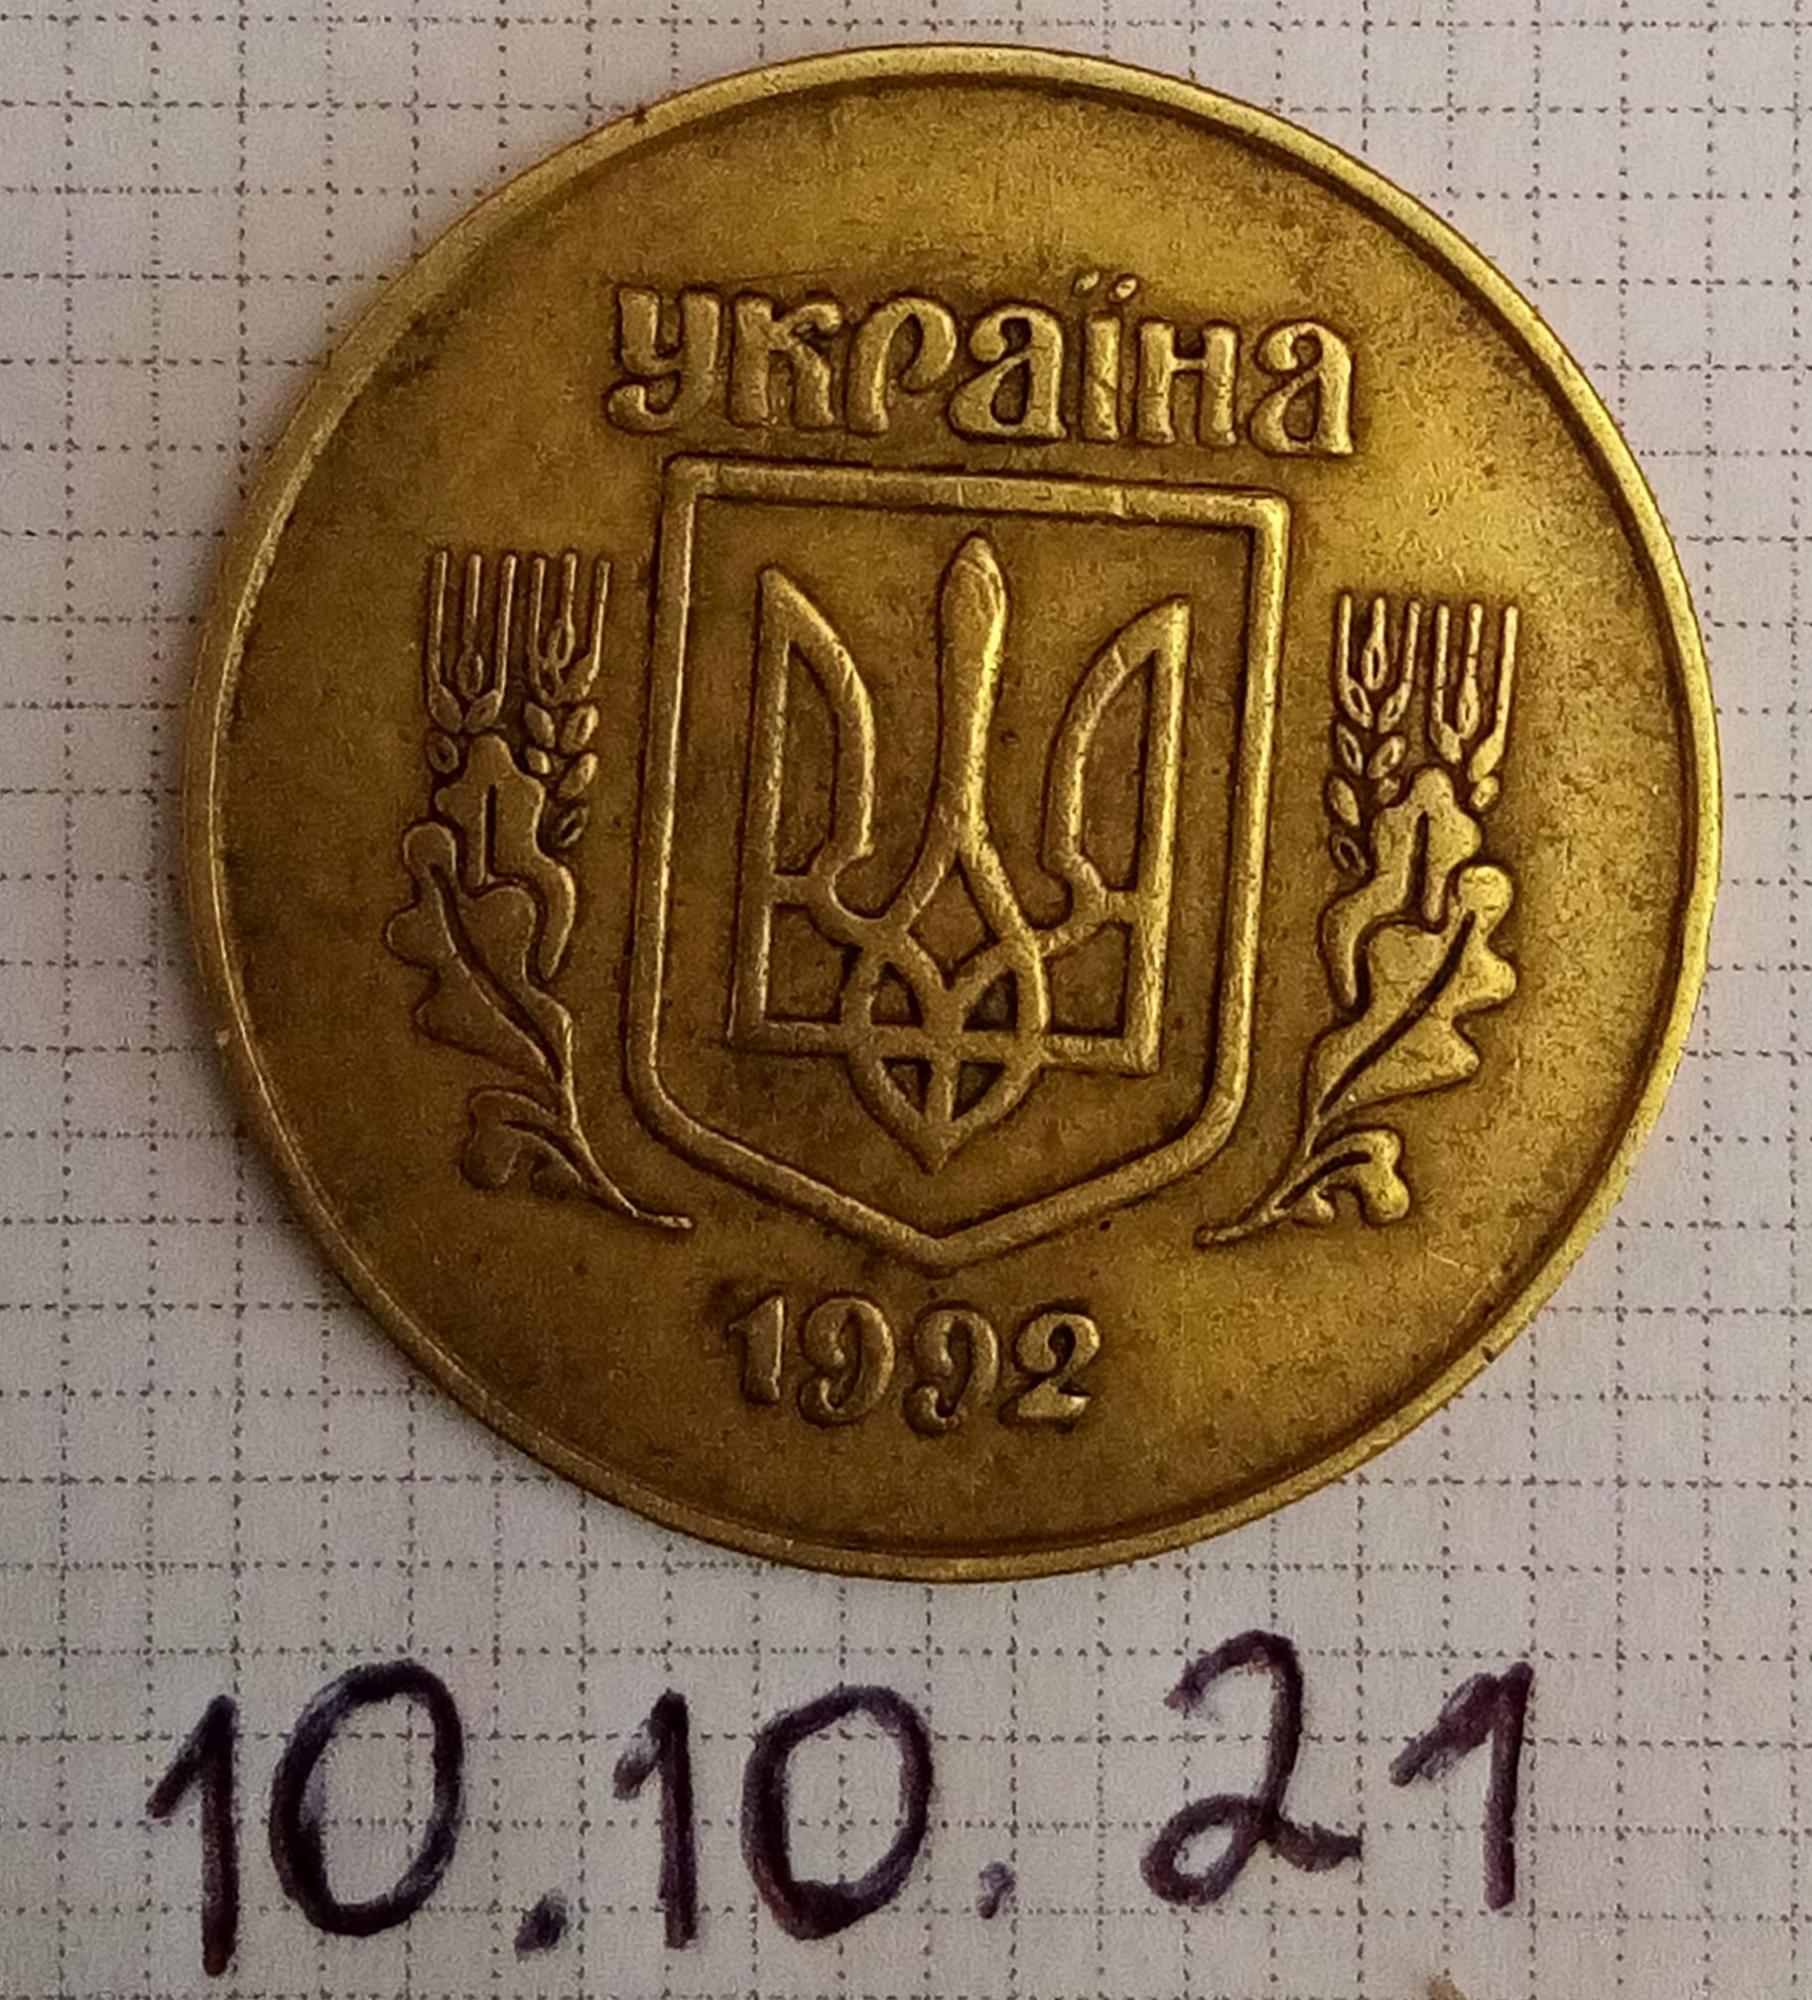 Мечта коллекционера! Украинец нашел редчайшую монету, которая стоит 10 тысяч (фото)